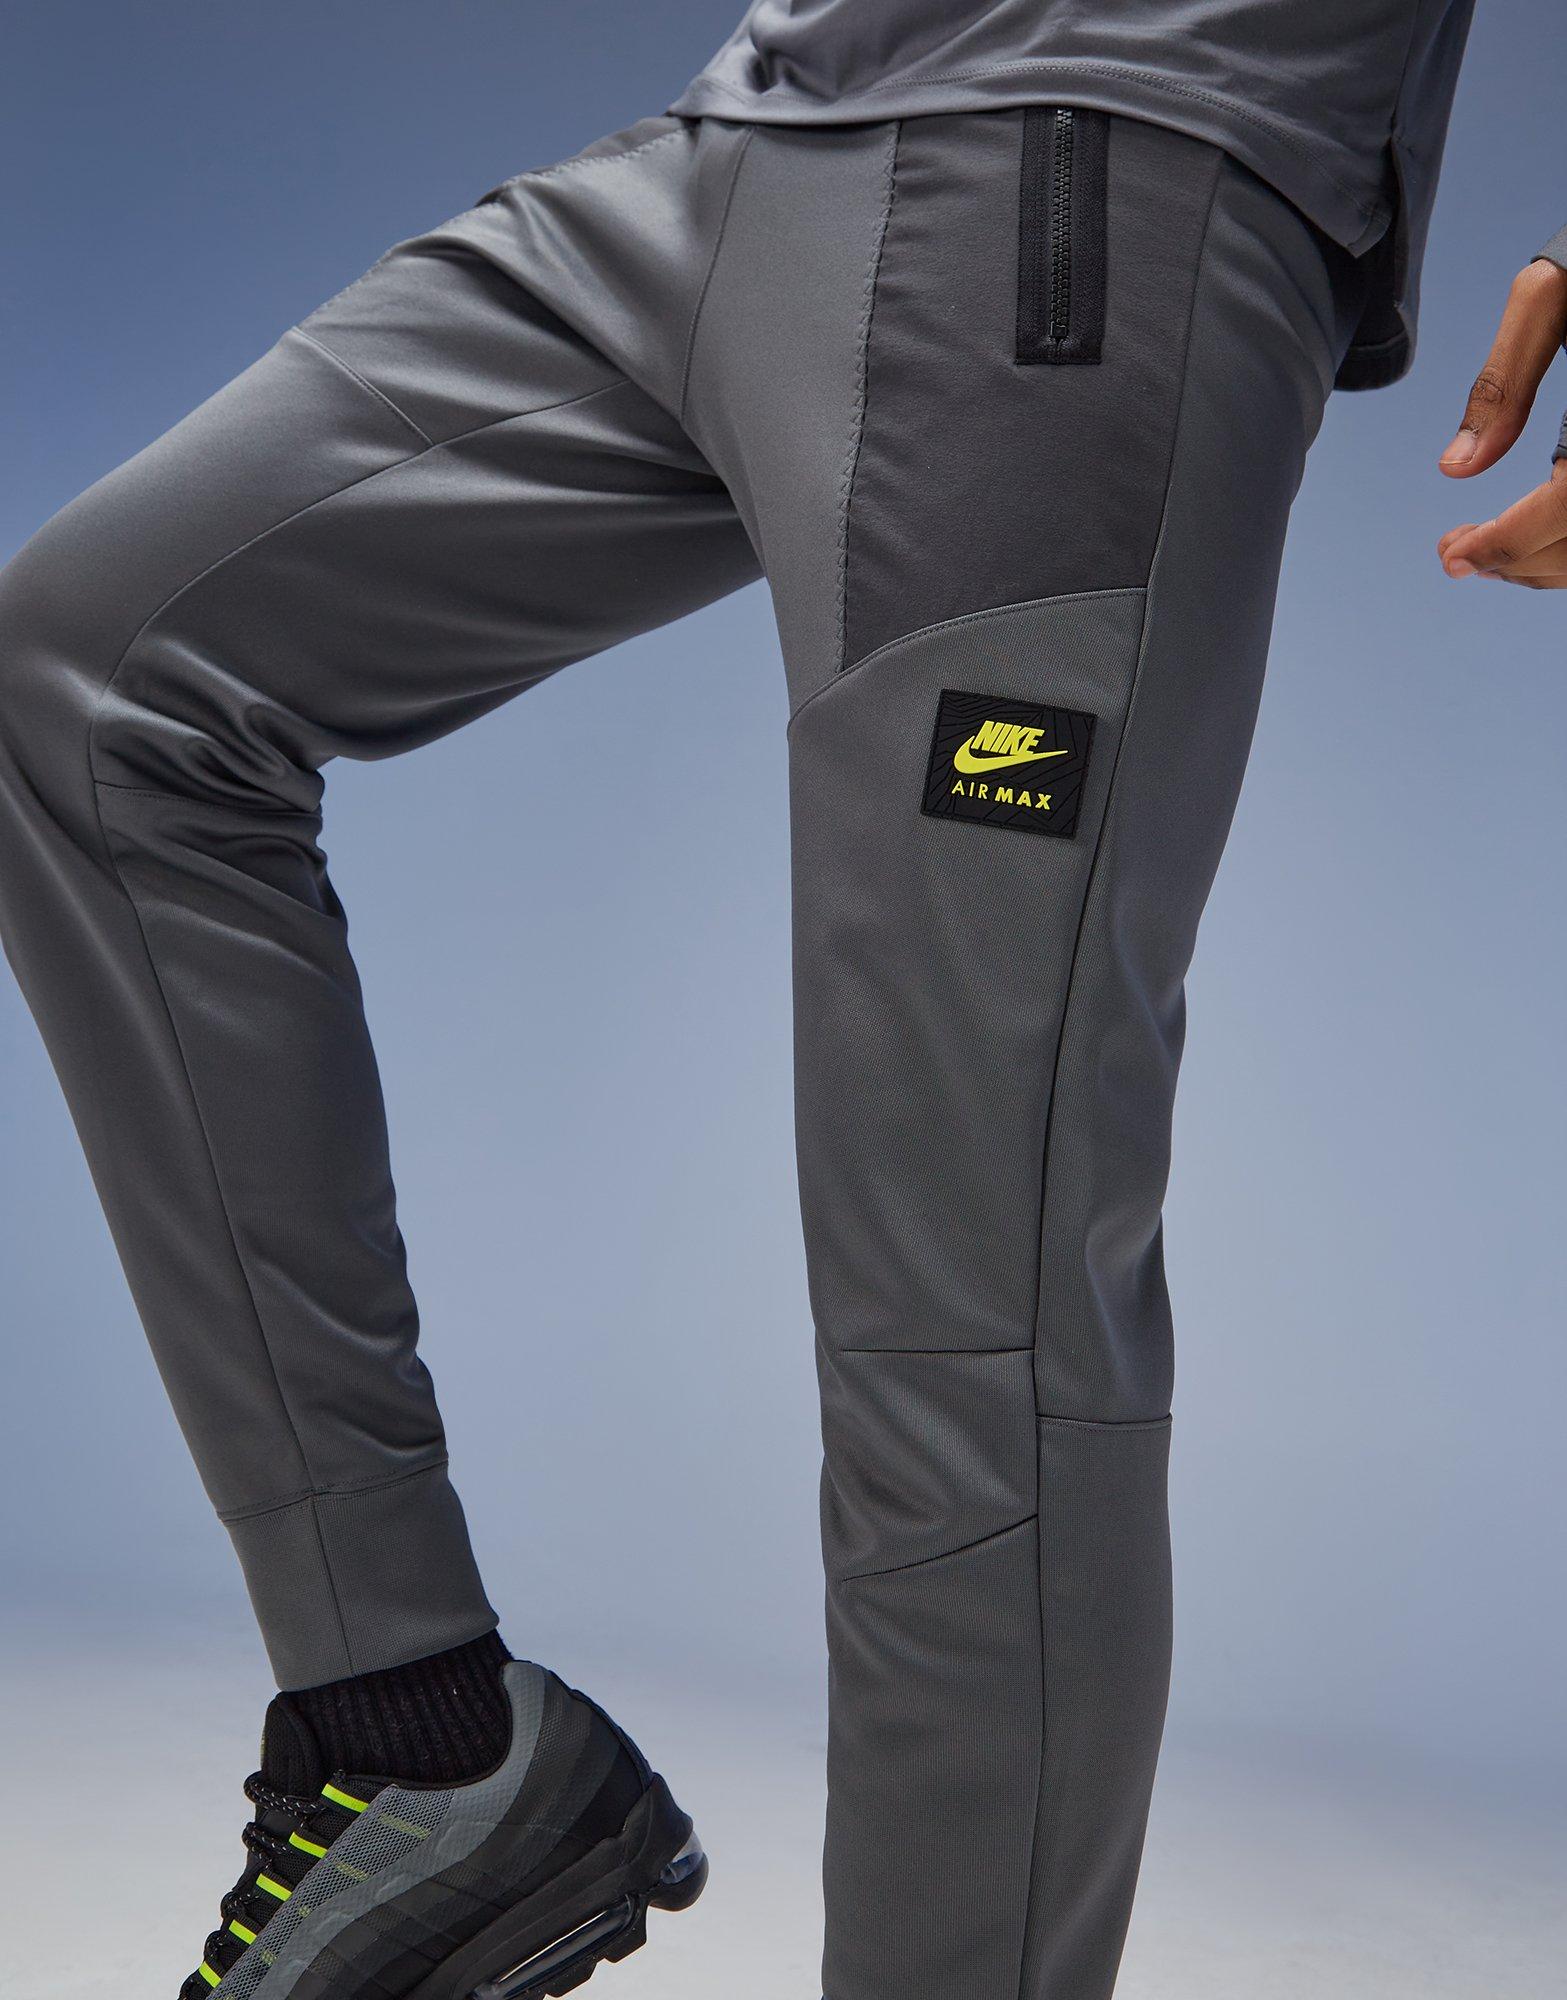 Grey Nike Air Max Track Pants - JD Sports Global